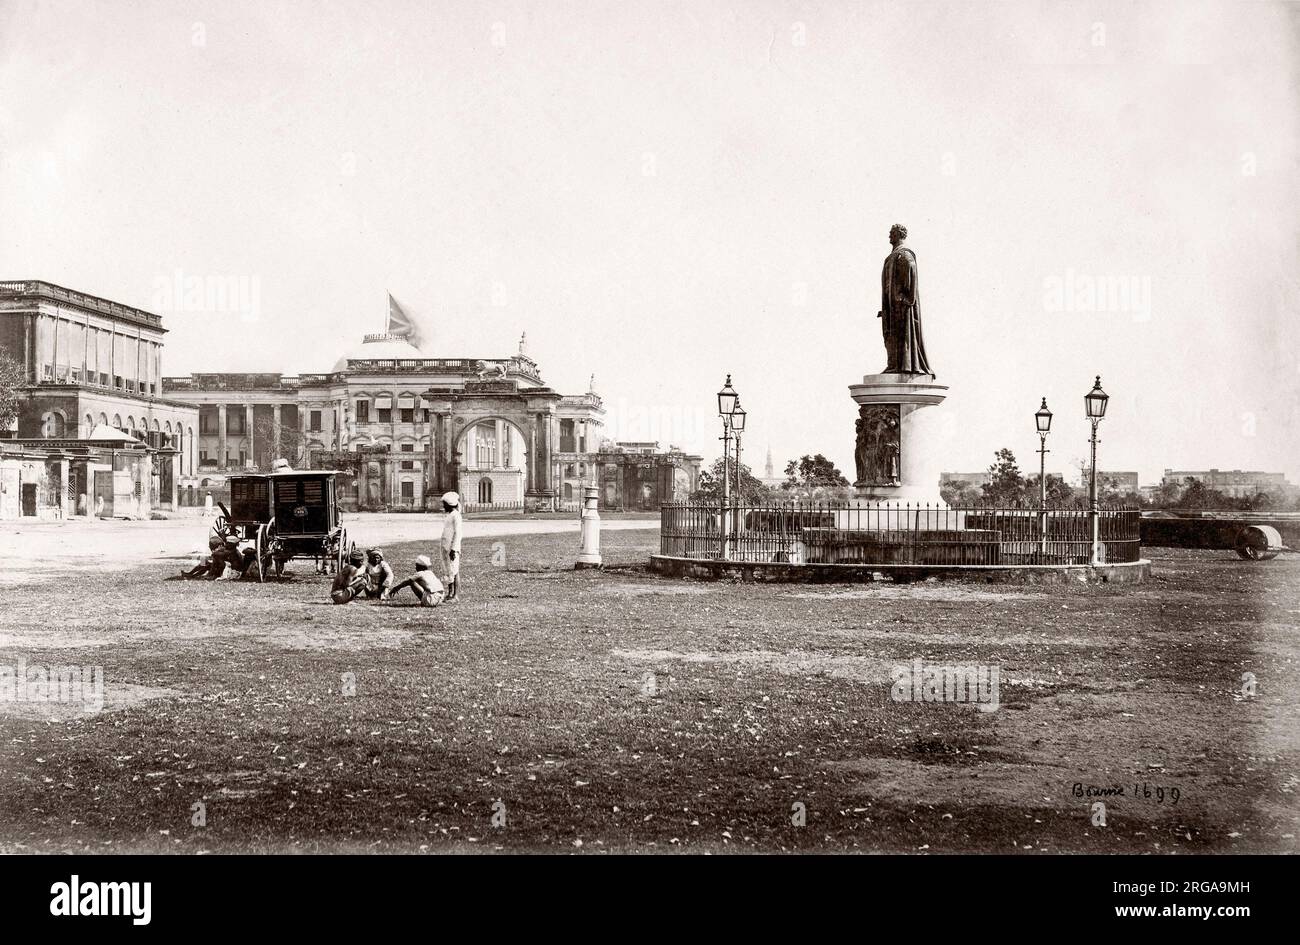 L'Inde des années 1860 par Samuel Bourne - statue de Sir William Cavendish Bentinck en face de la Mairie, Calcutta, Kolkata Banque D'Images